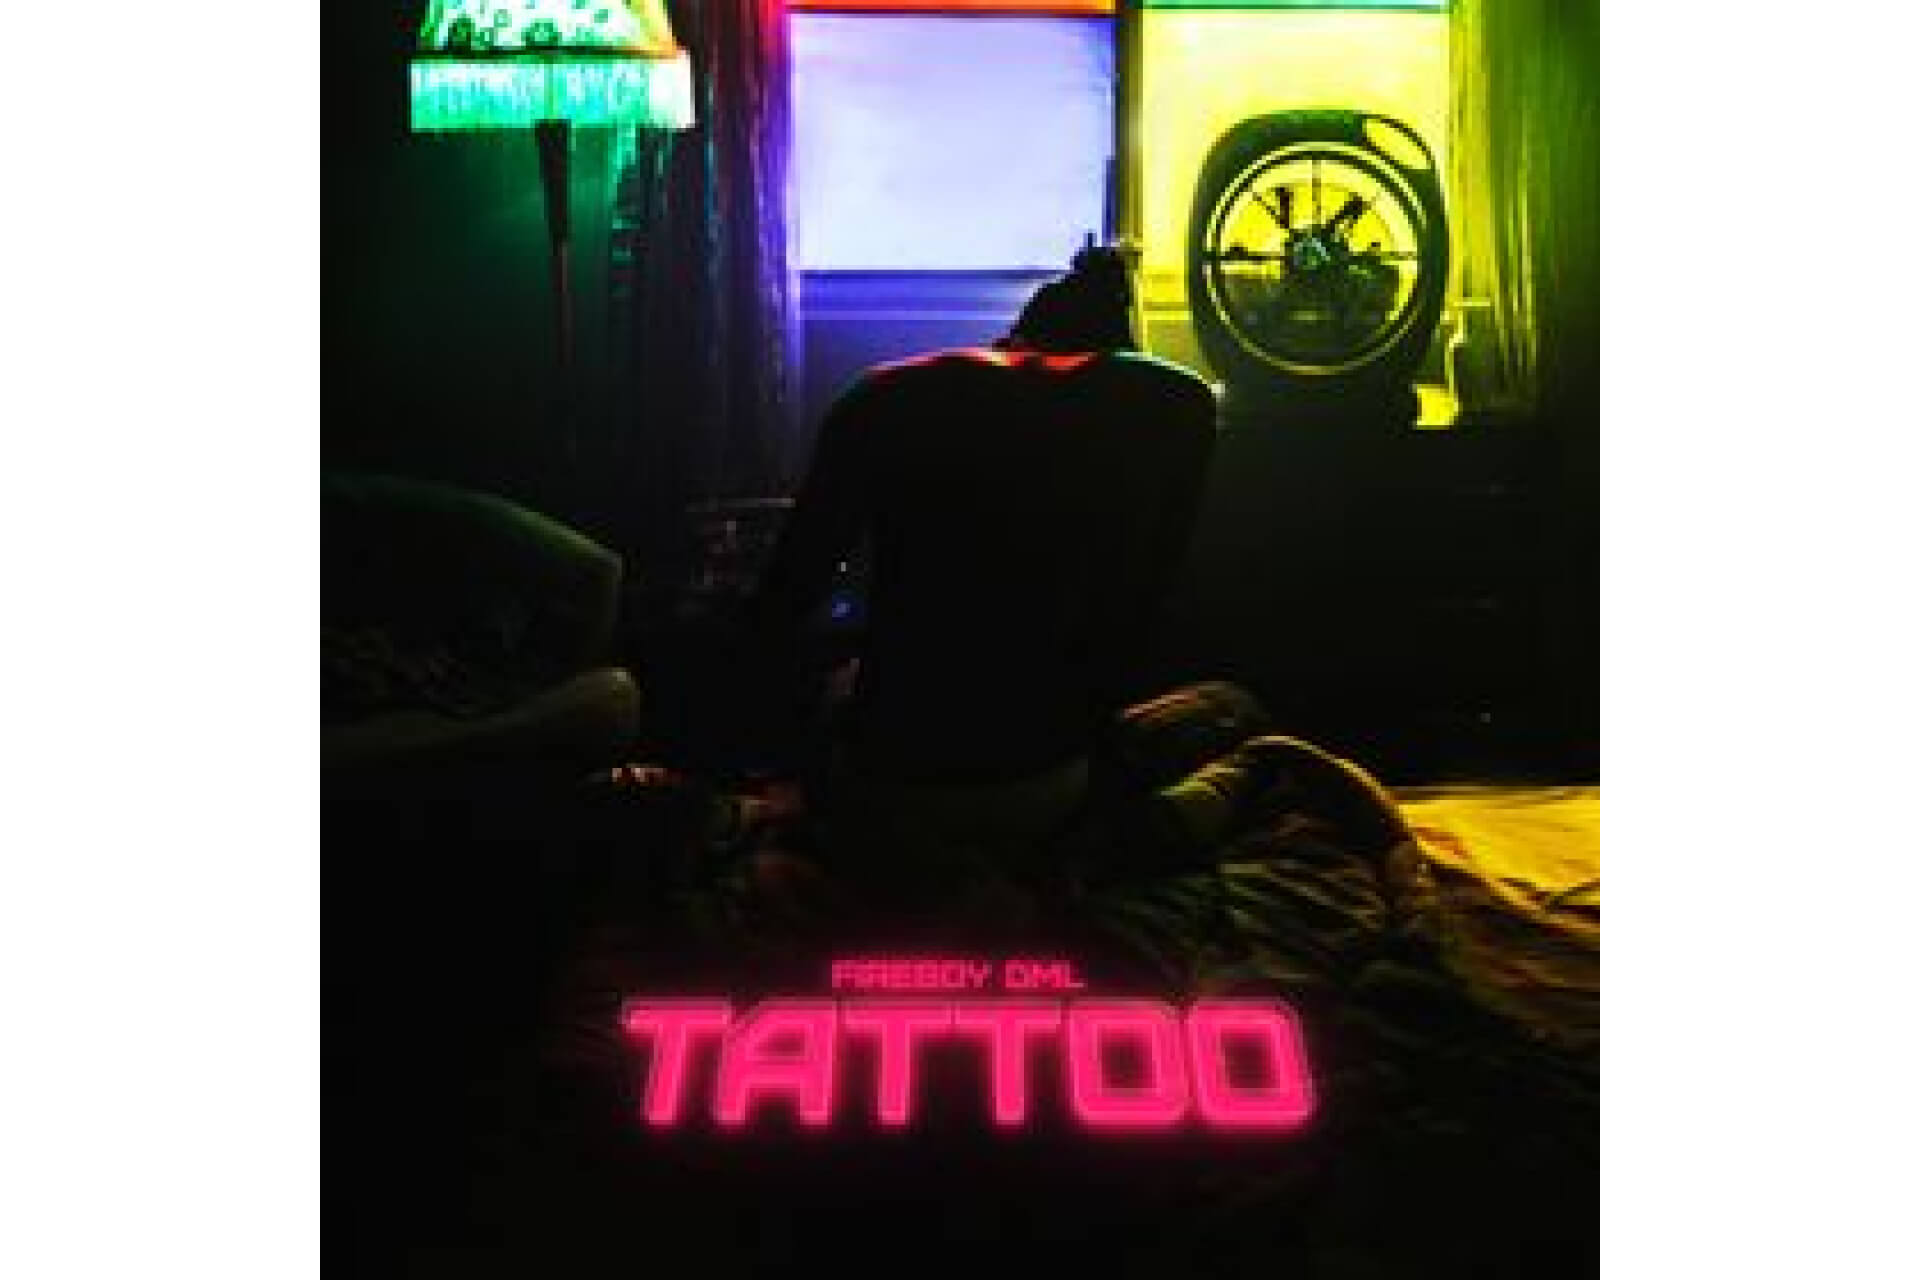 Fireboy-Tattoo